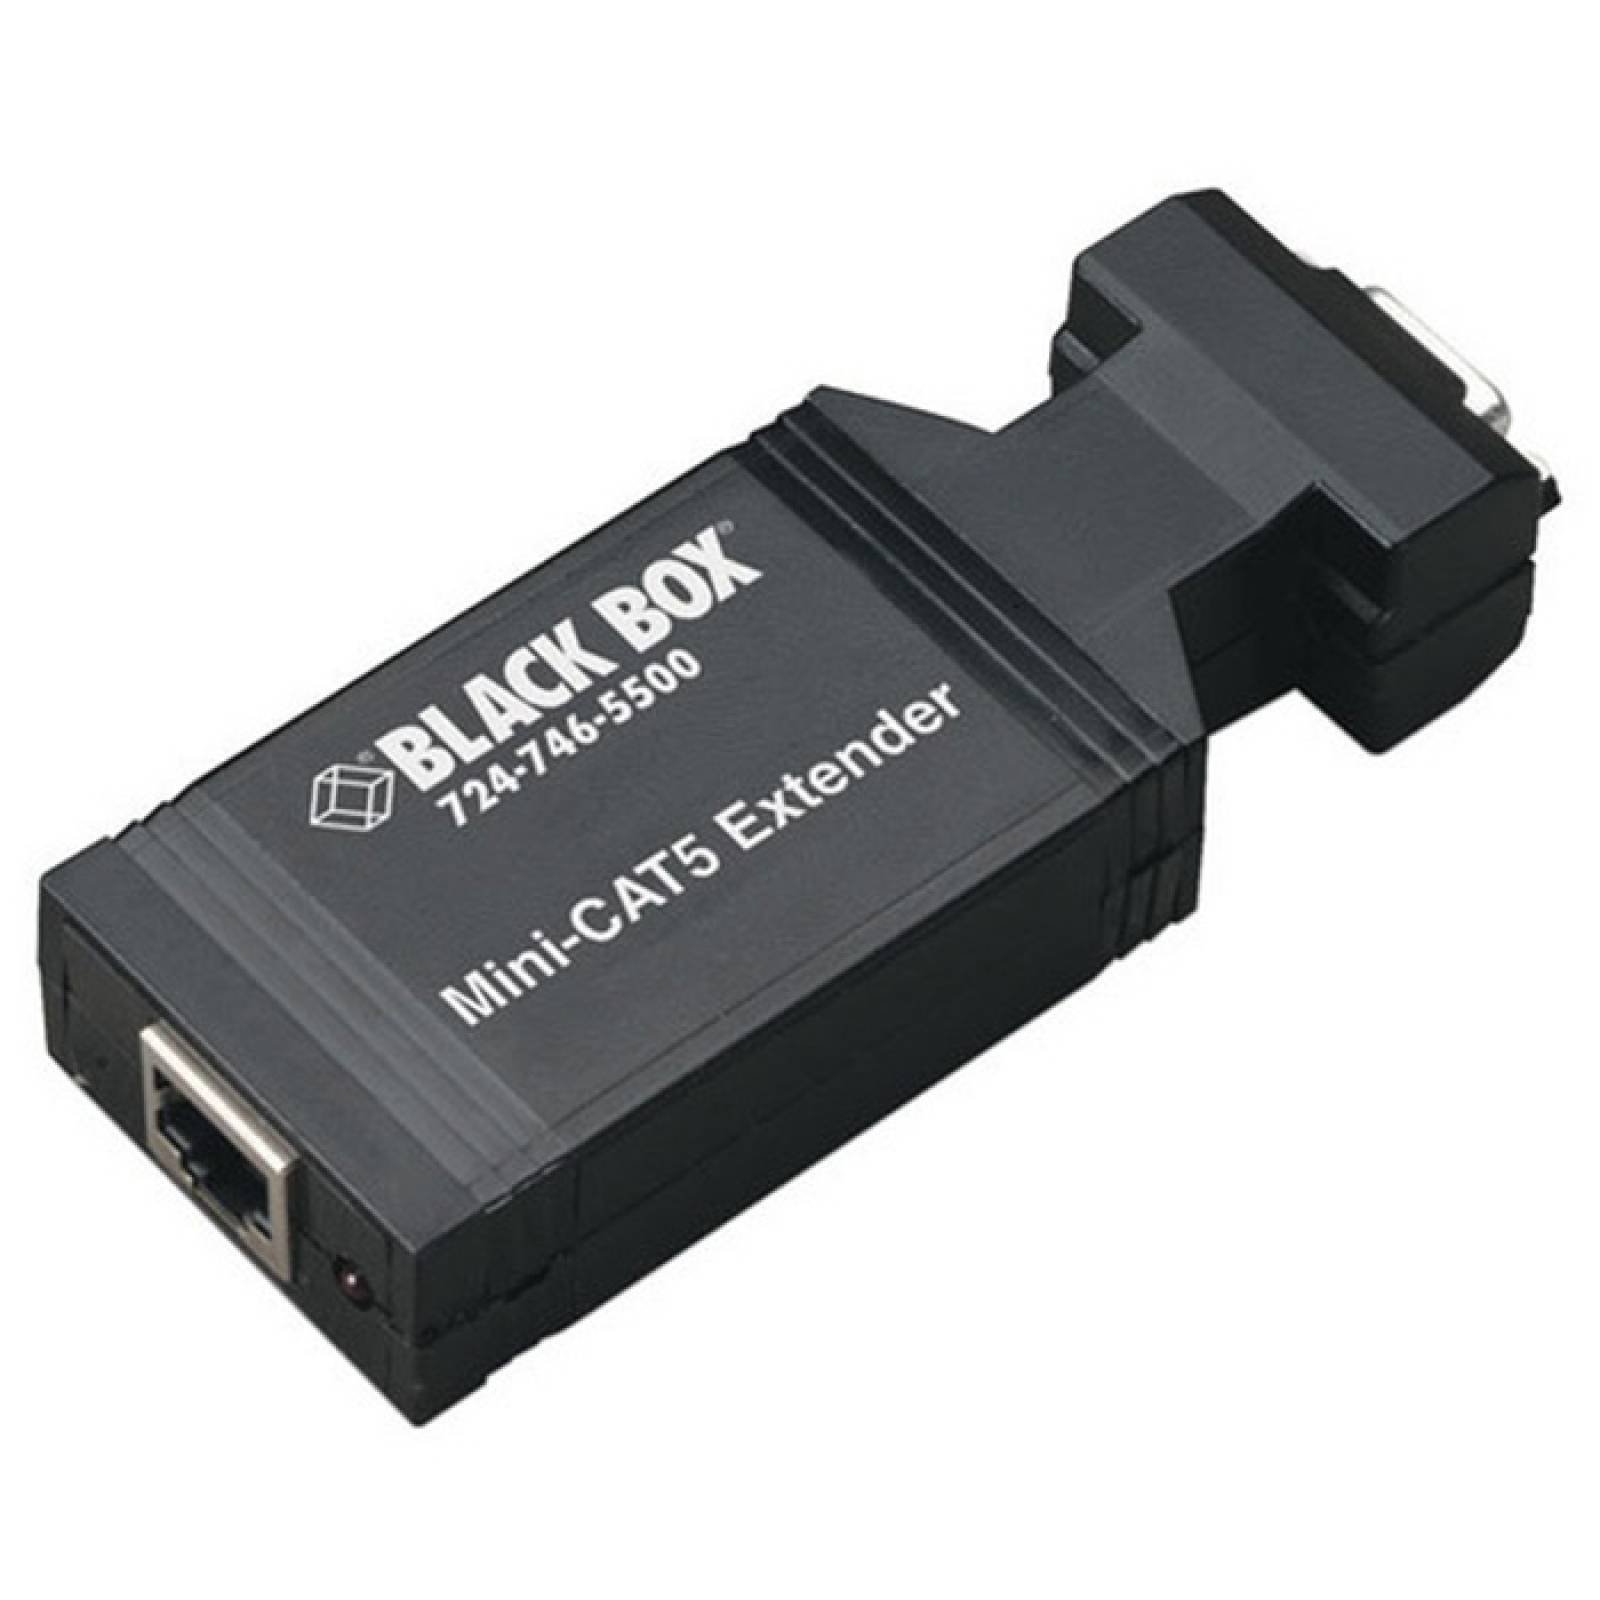 Consola de video AC602A Black Box